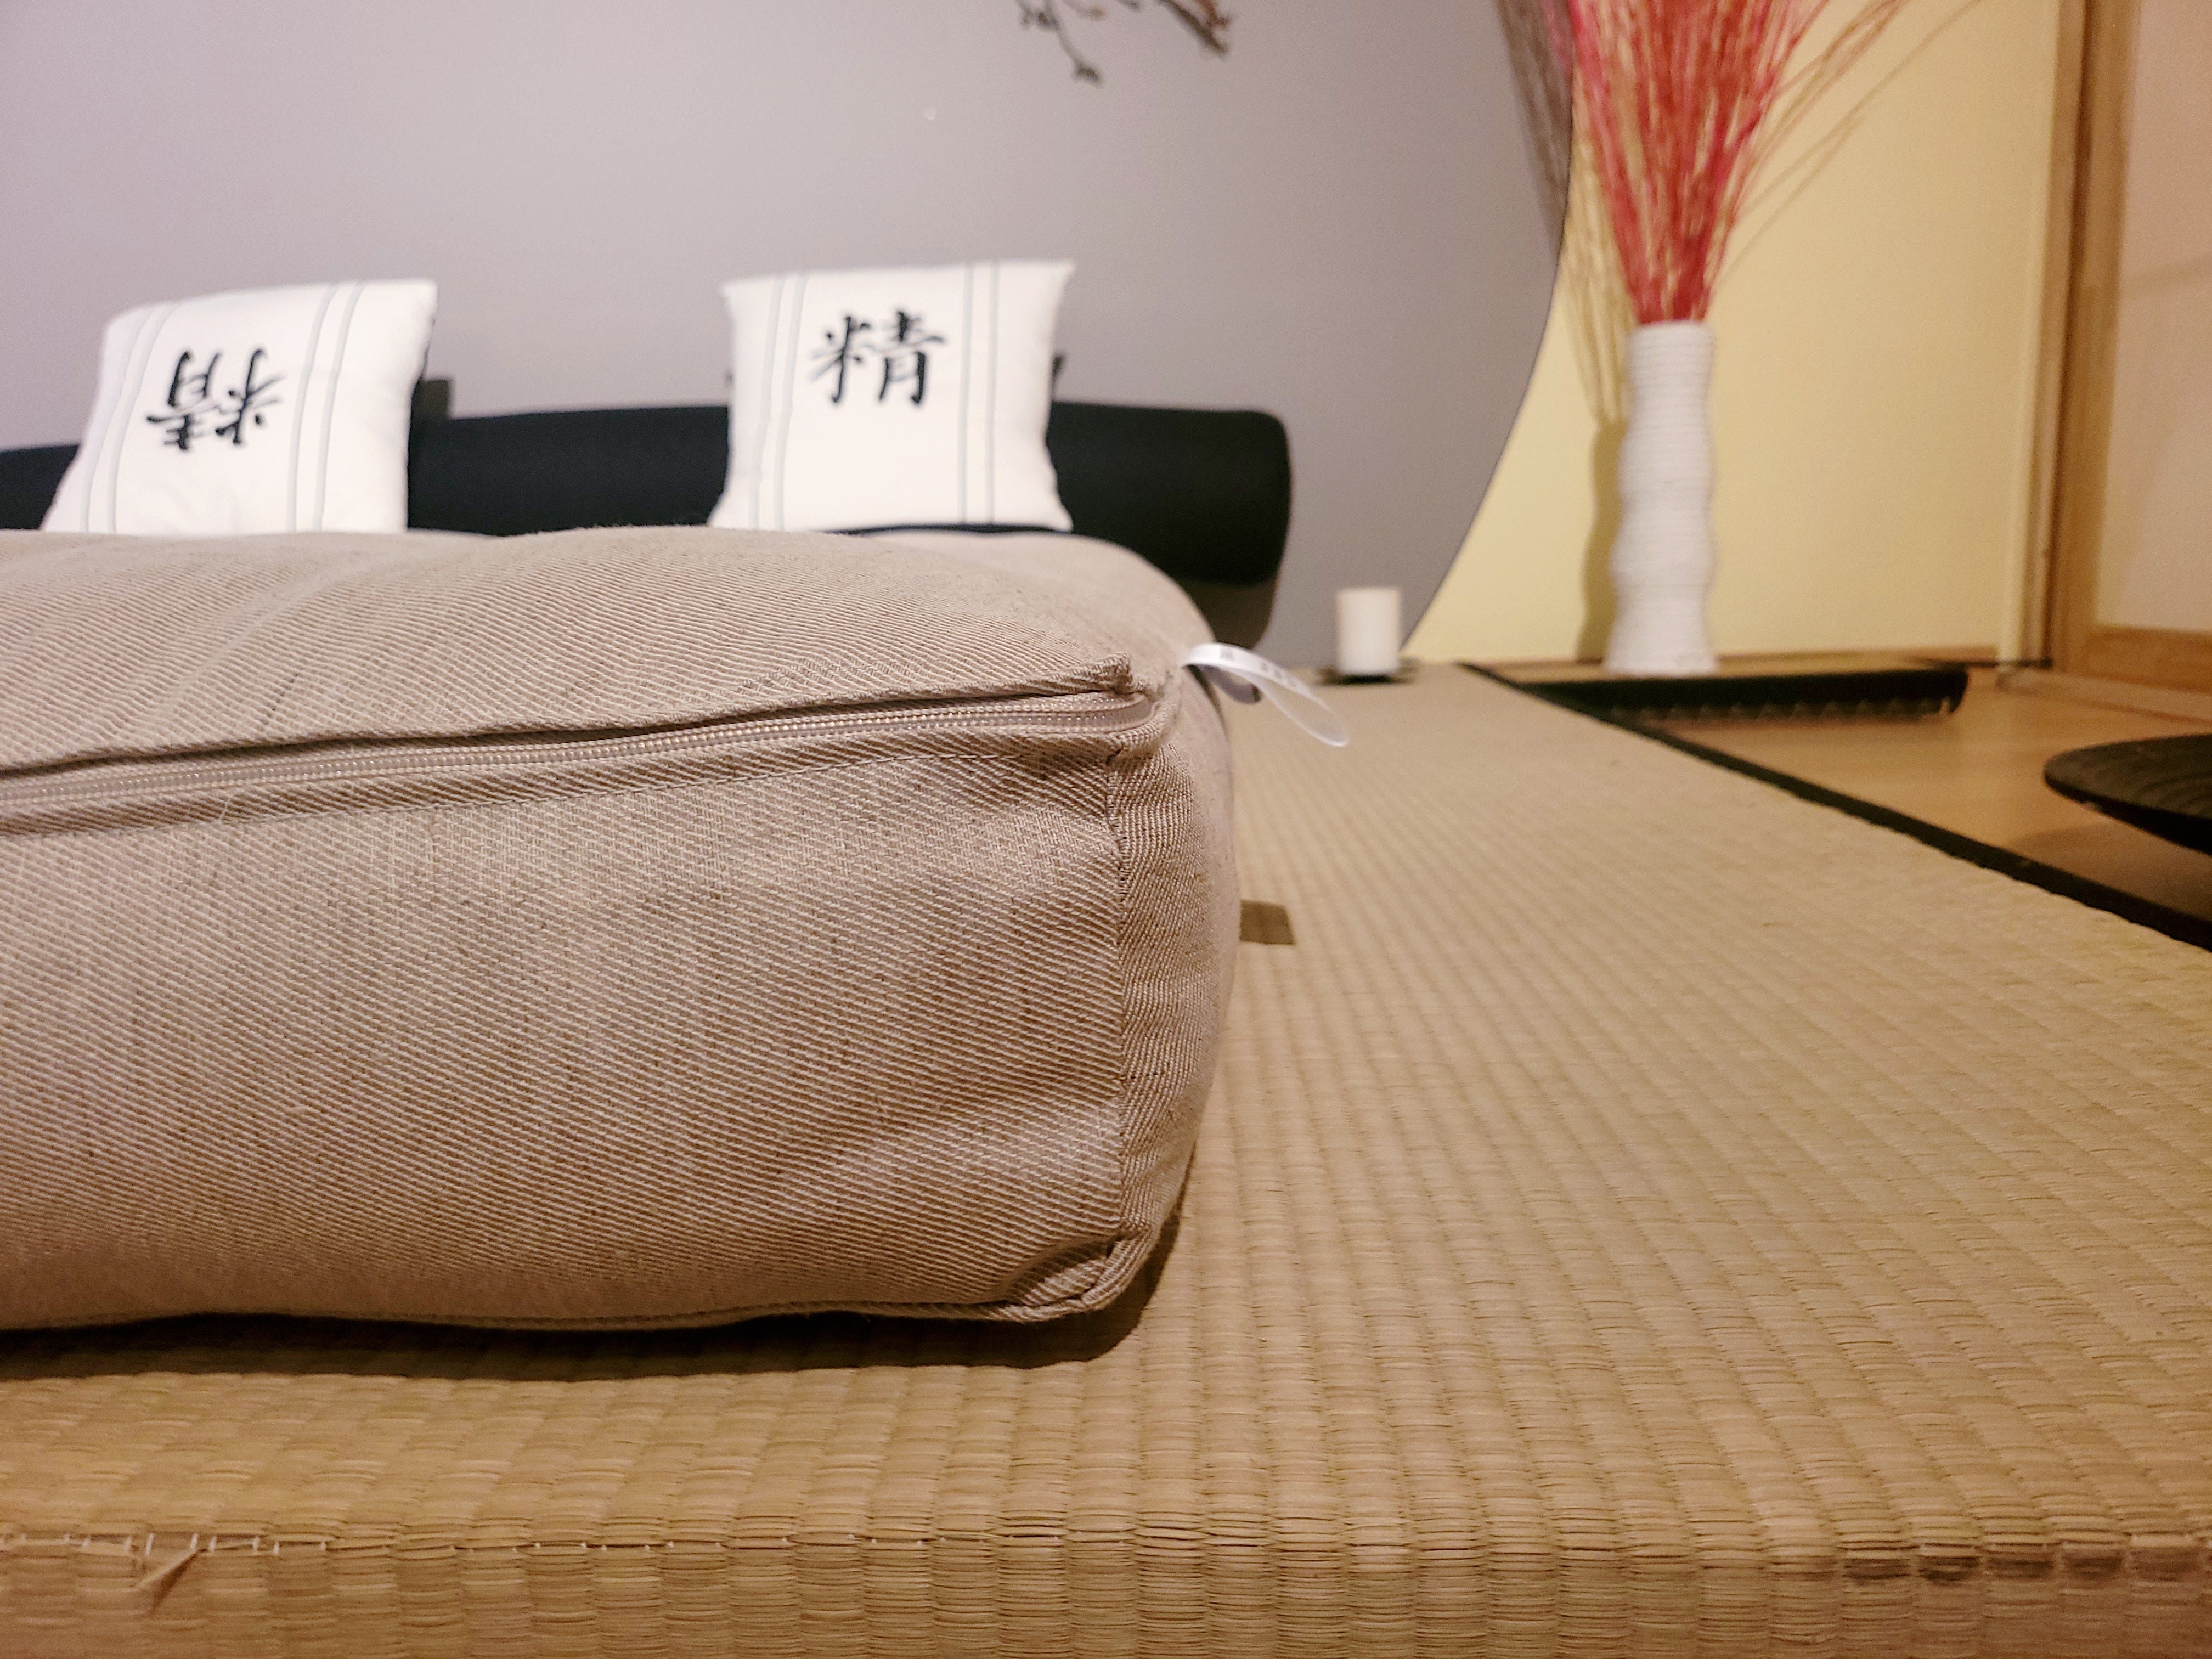 Kit Tatami + Futon Cotone - Canapa - Fibra di cocco